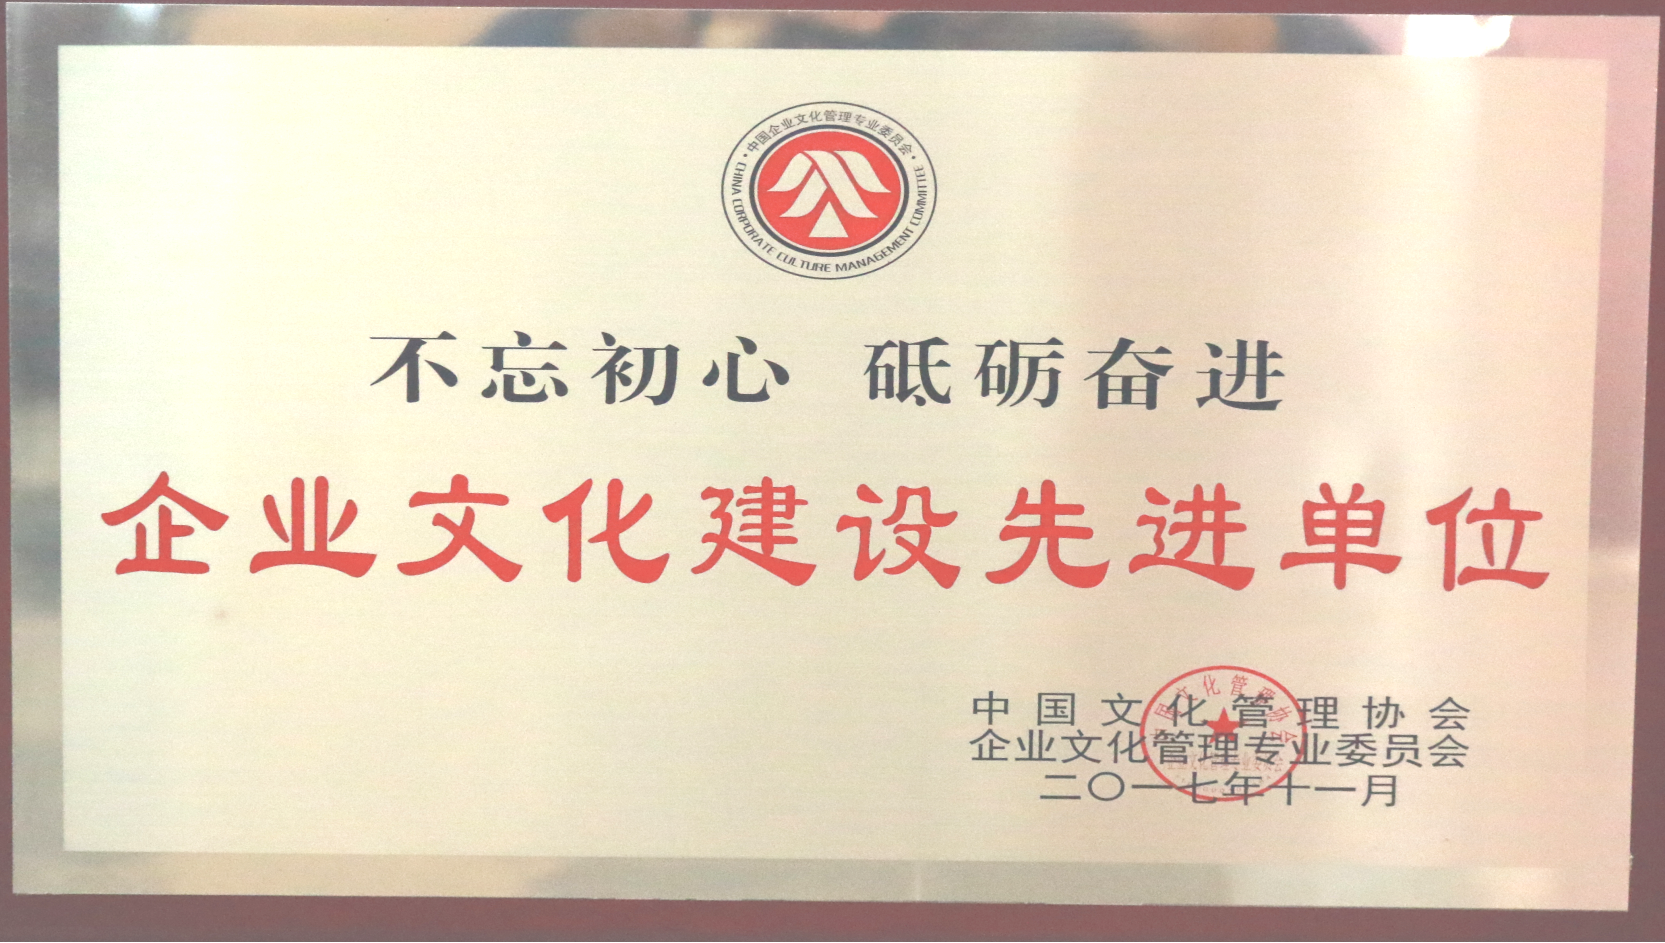 中国文化管理协会 尊龙凯时人生就博官网登录的文化建设先进单位.png